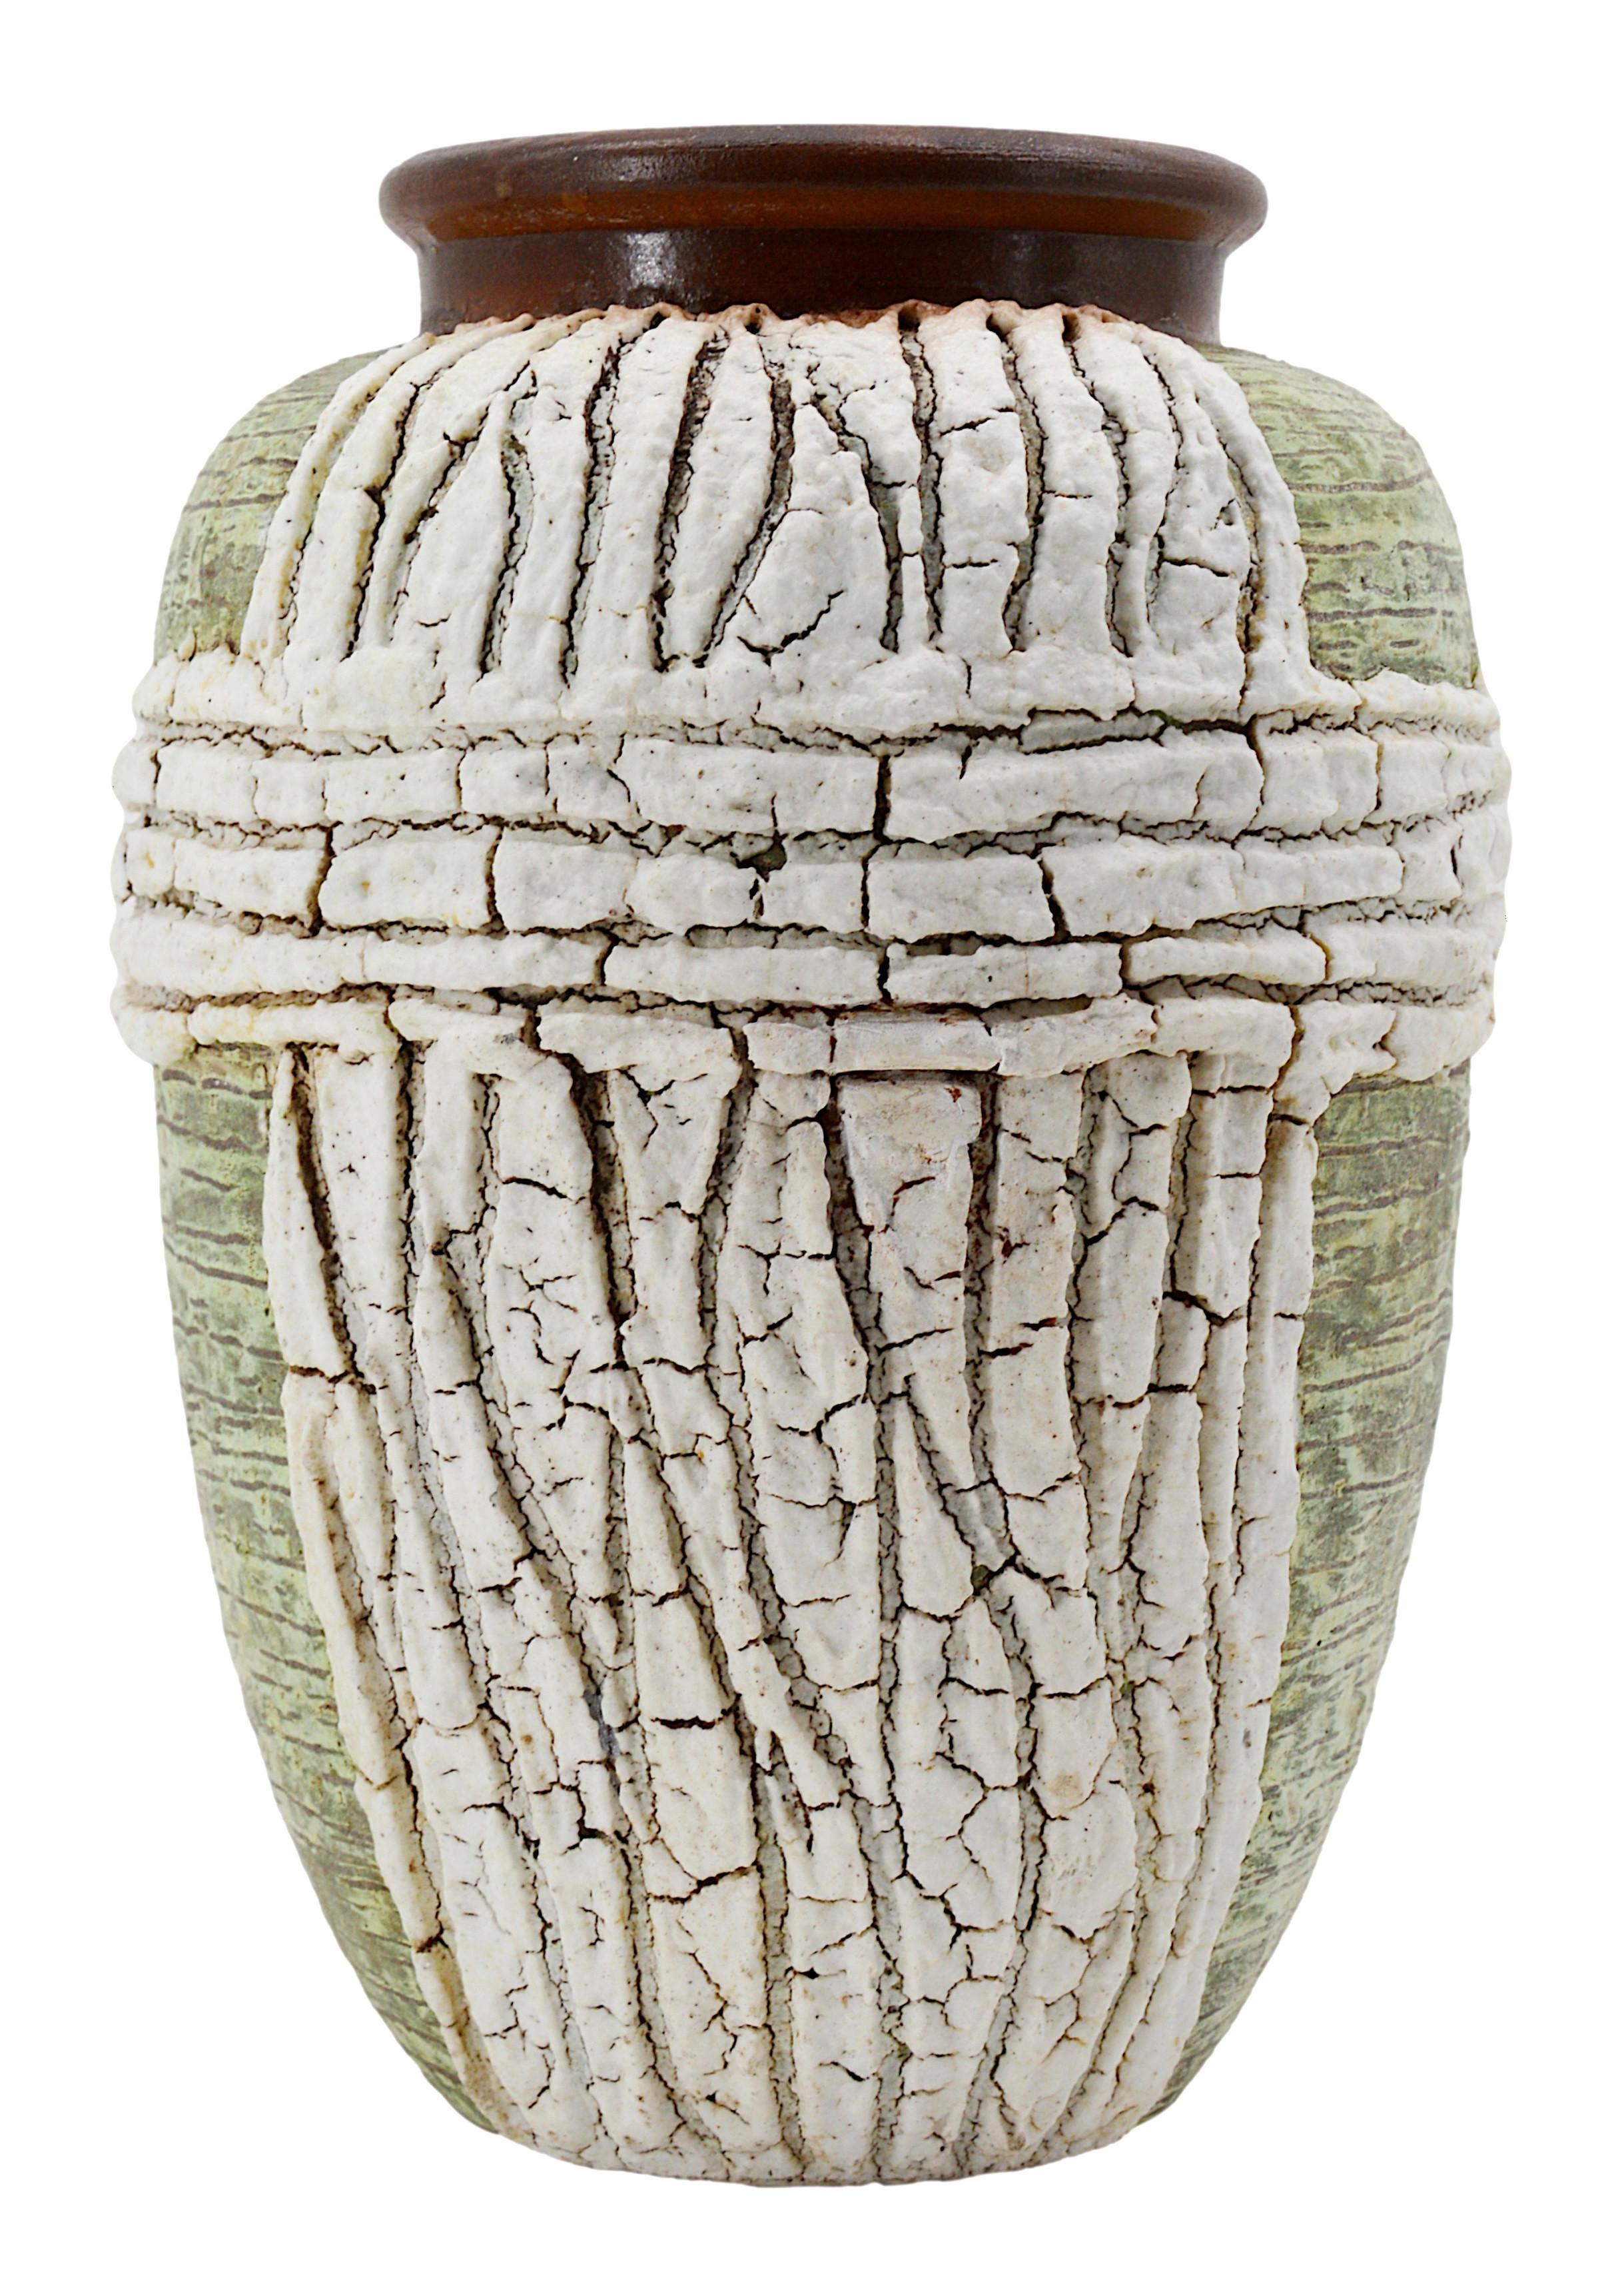 Französische Vase im Art déco-Stil von Louis Dage (Antony, Paris), Frankreich, ca. 1930. Steingut. Wichtige Emaille-Applikationen für diese afrikanistische Vase. Maße: Höhe: 29cm (11.4